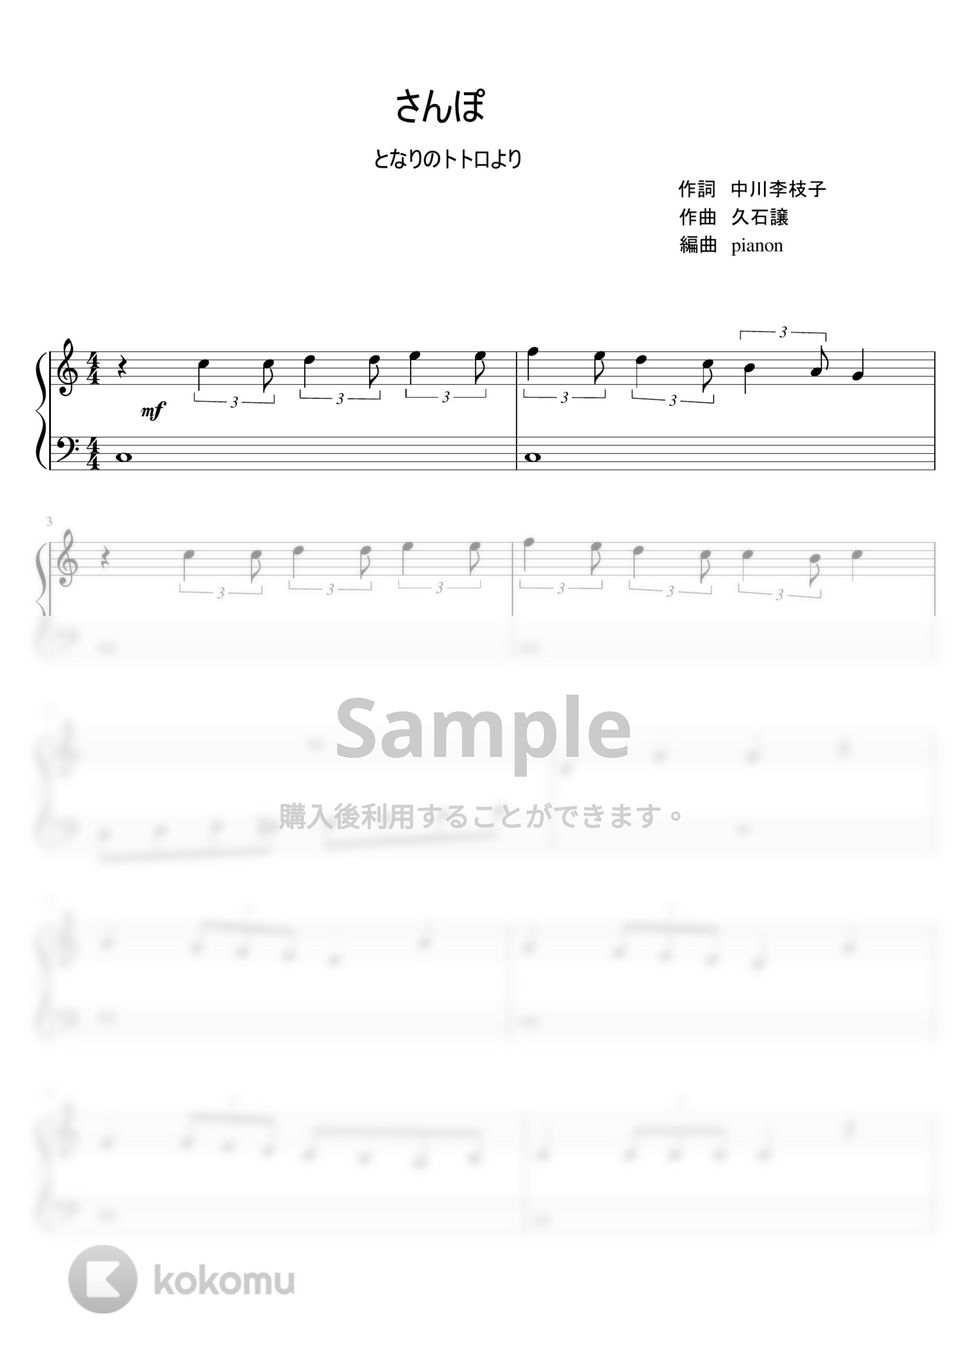 久石譲 - さんぽ (ピアノソロ / ピアノ入門) by pianon